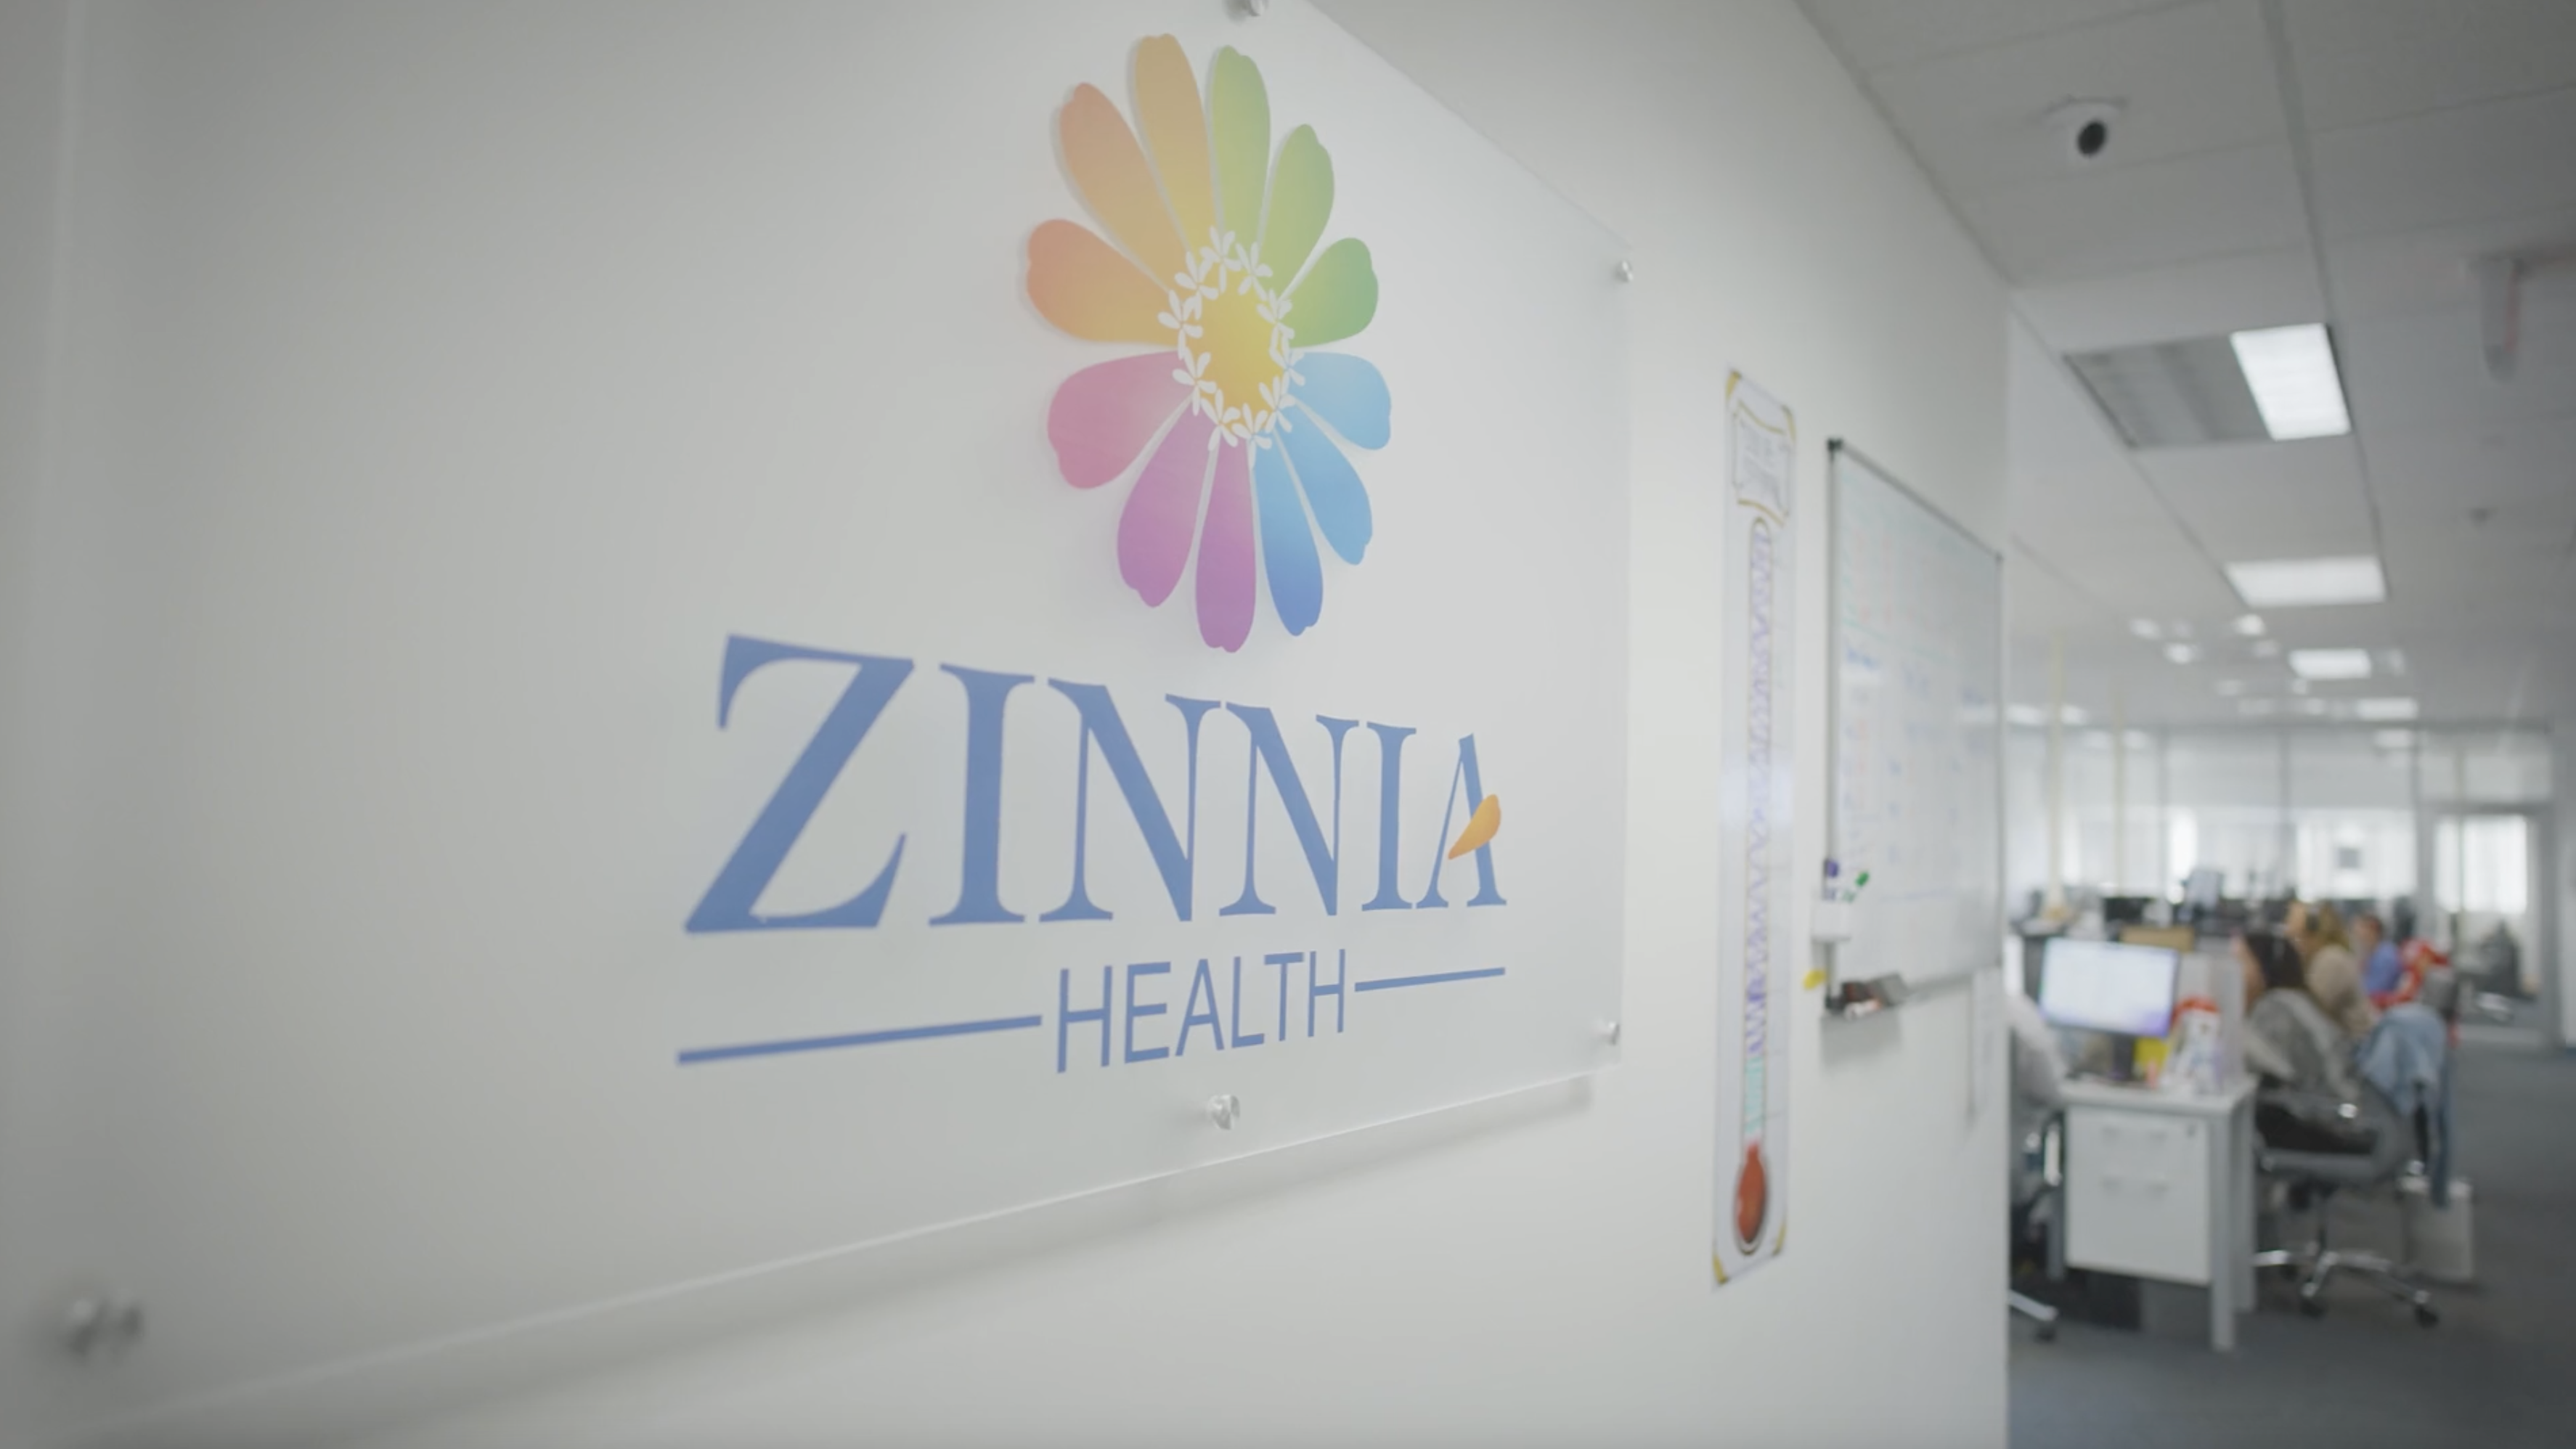 Zinnia Health offices